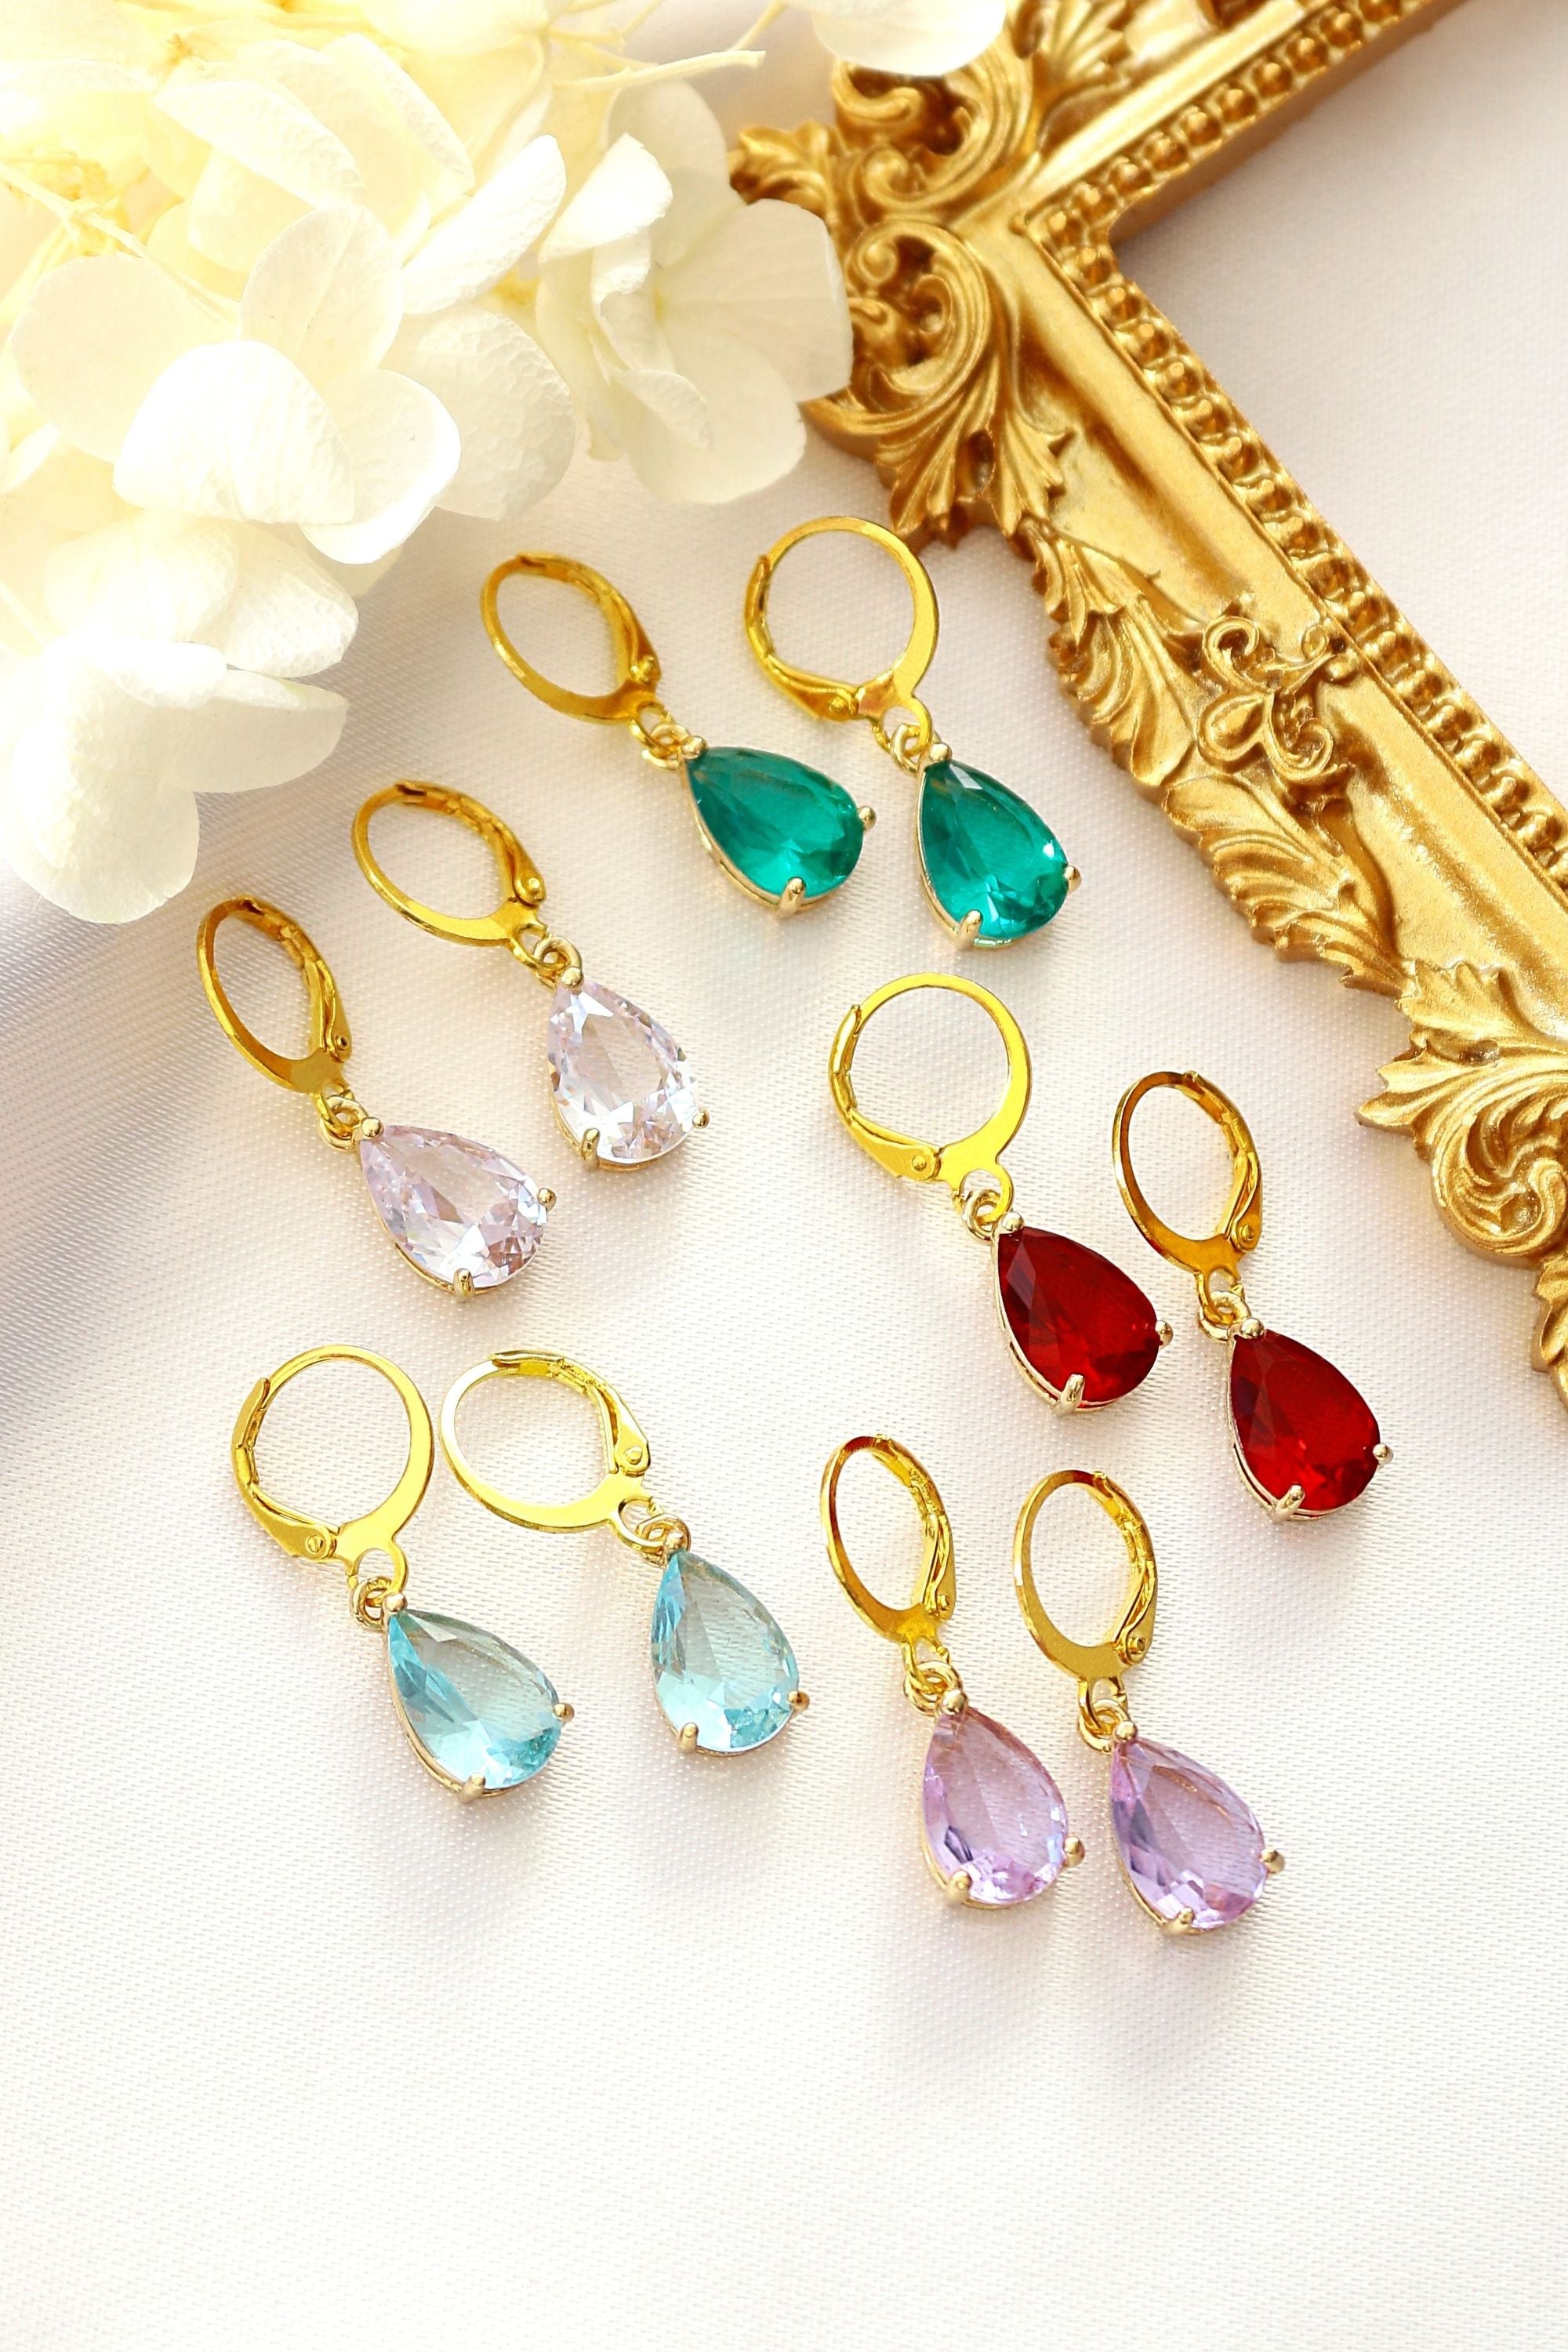 18K Rainbow Teardrop Hoop Earrings - Handmade in Europe with CZ Charms in 5 Colors Bijou Her